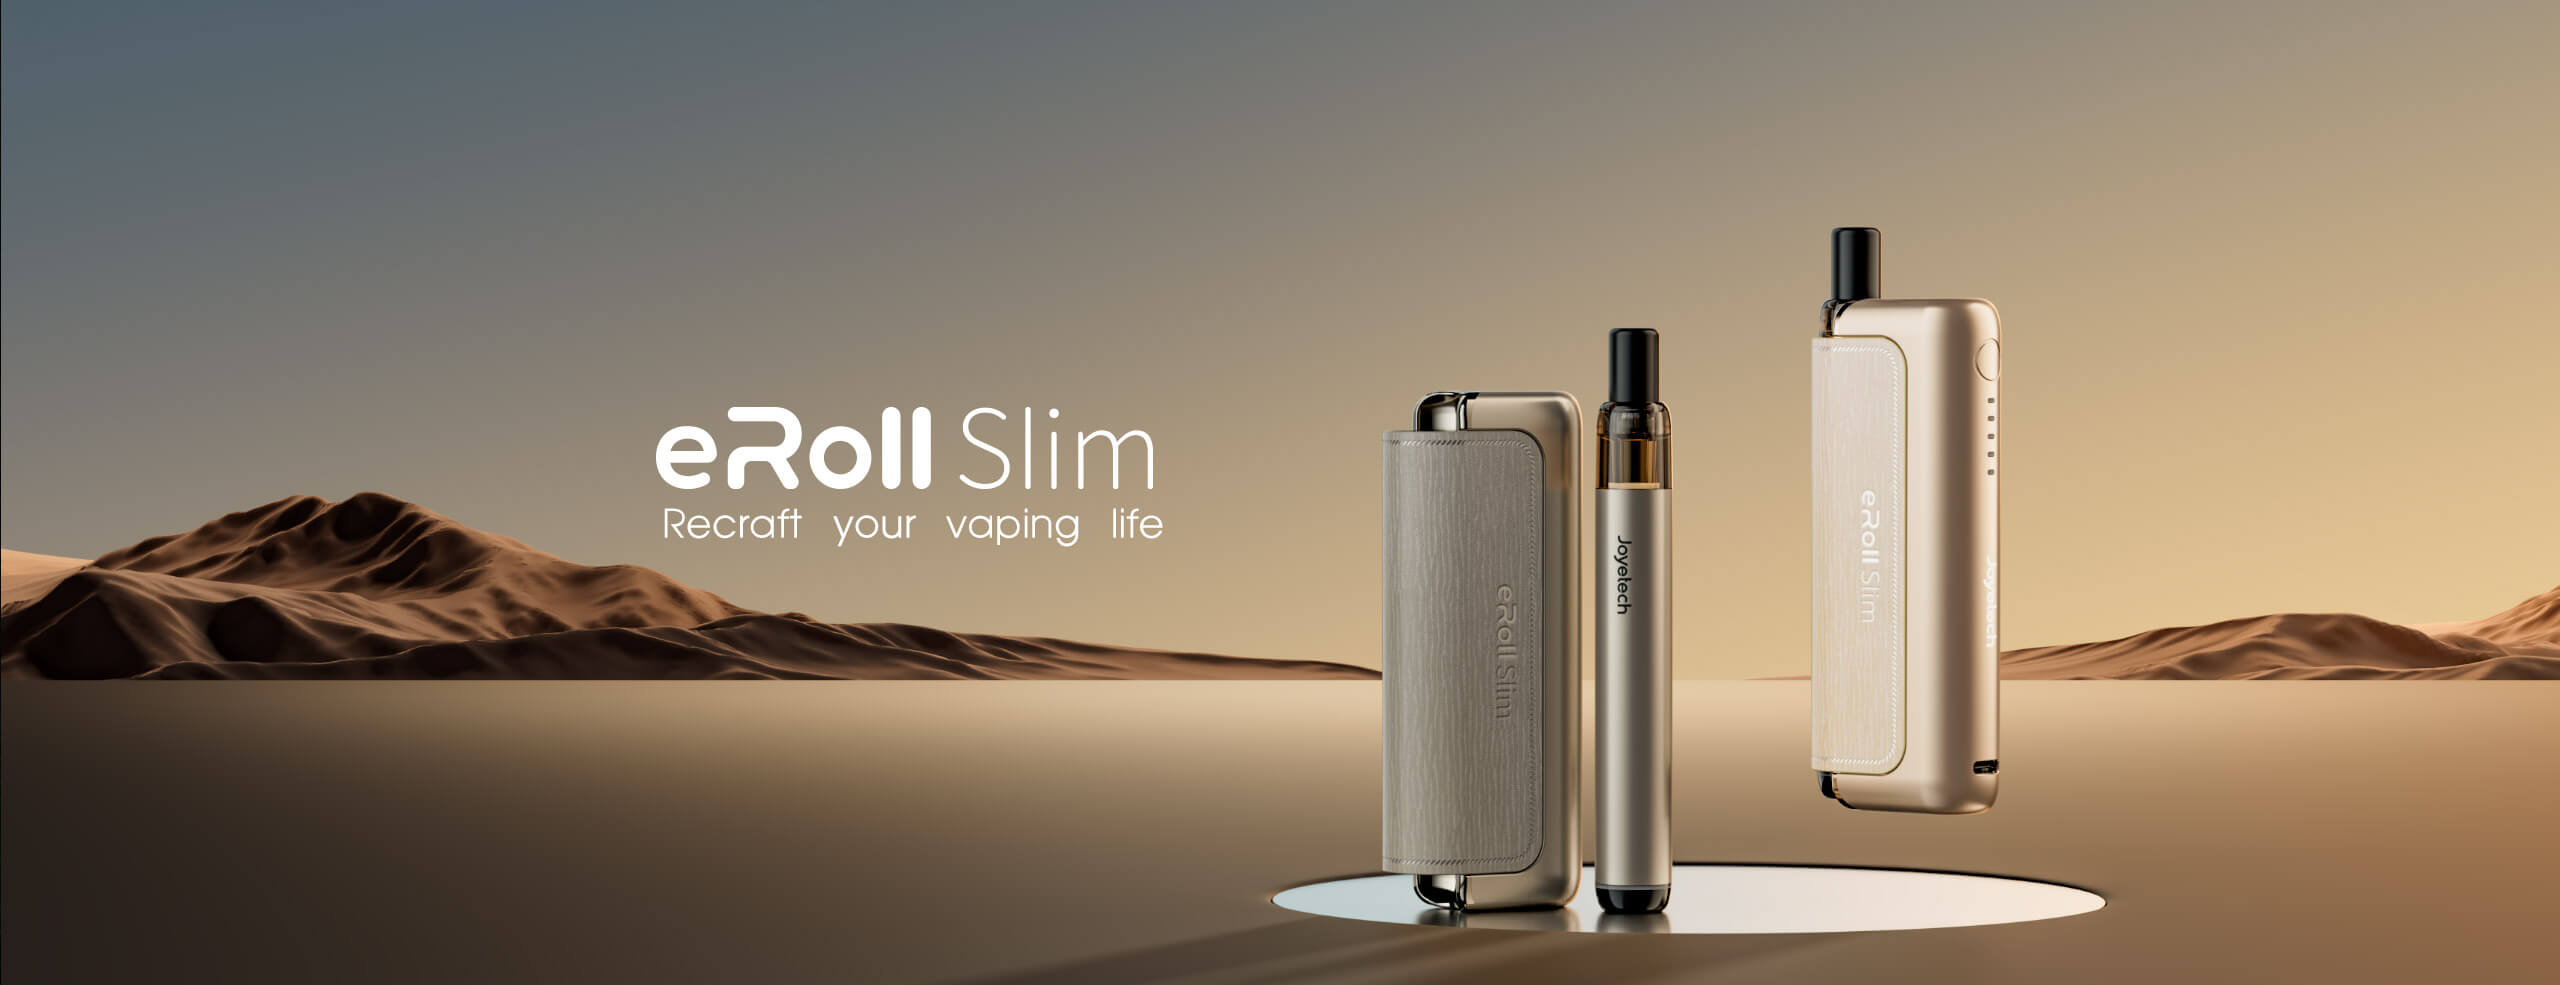 eRoll Slim Kit Joyetech Pod+PowerBank 1980mAh - IperSvapo